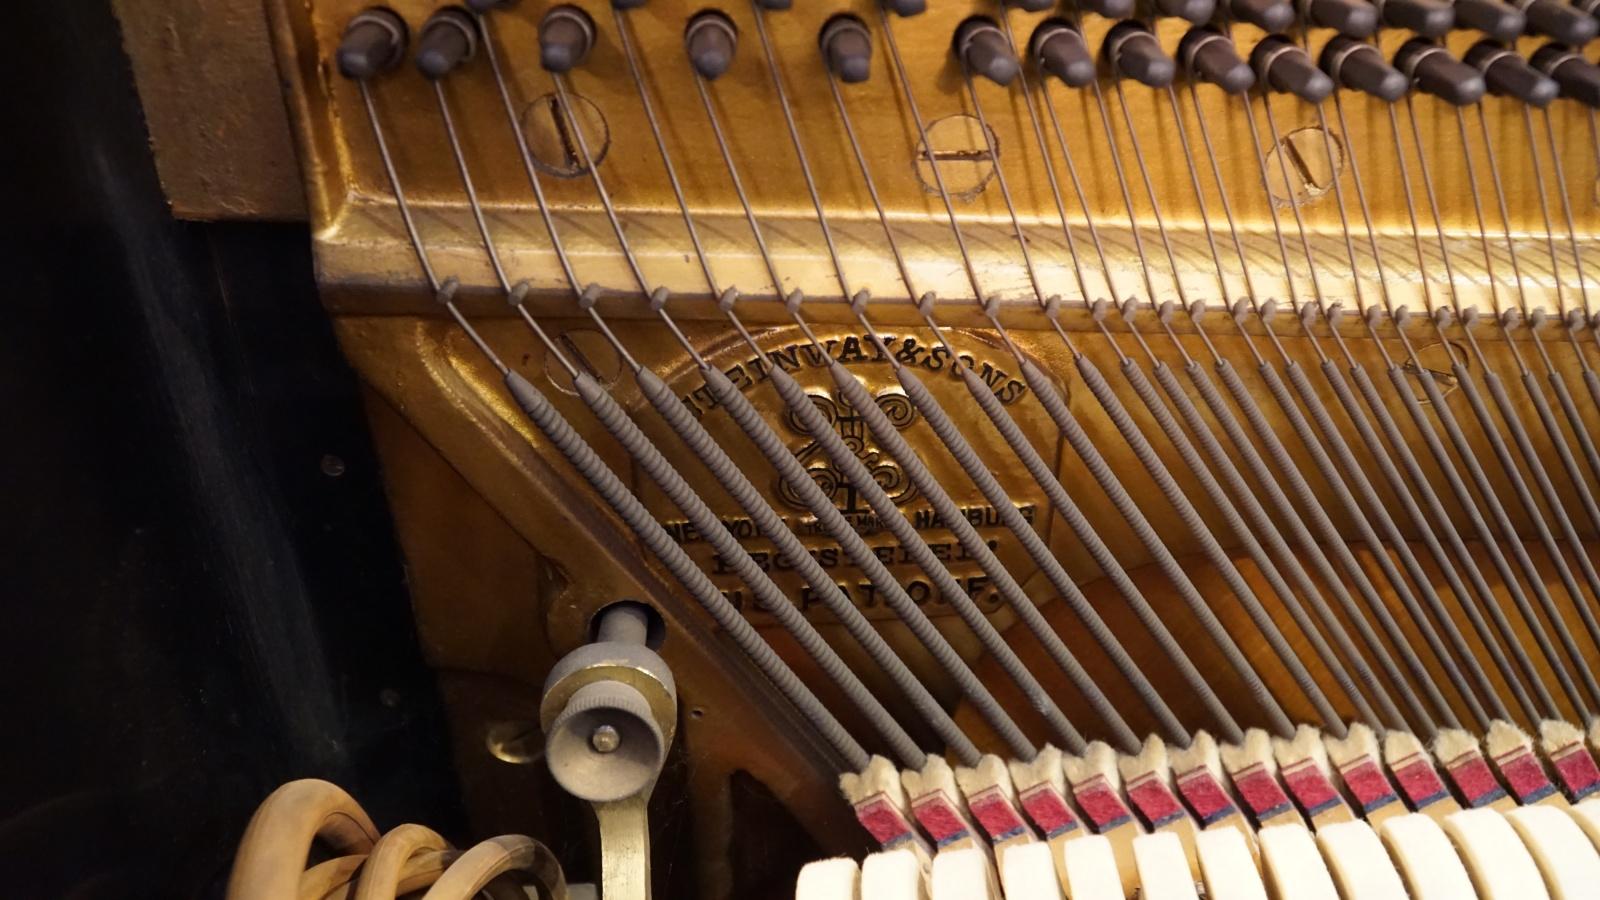 产品工艺-劳伦蒂亚钢琴| 德国名琴 | 传承德国百年匠心工艺